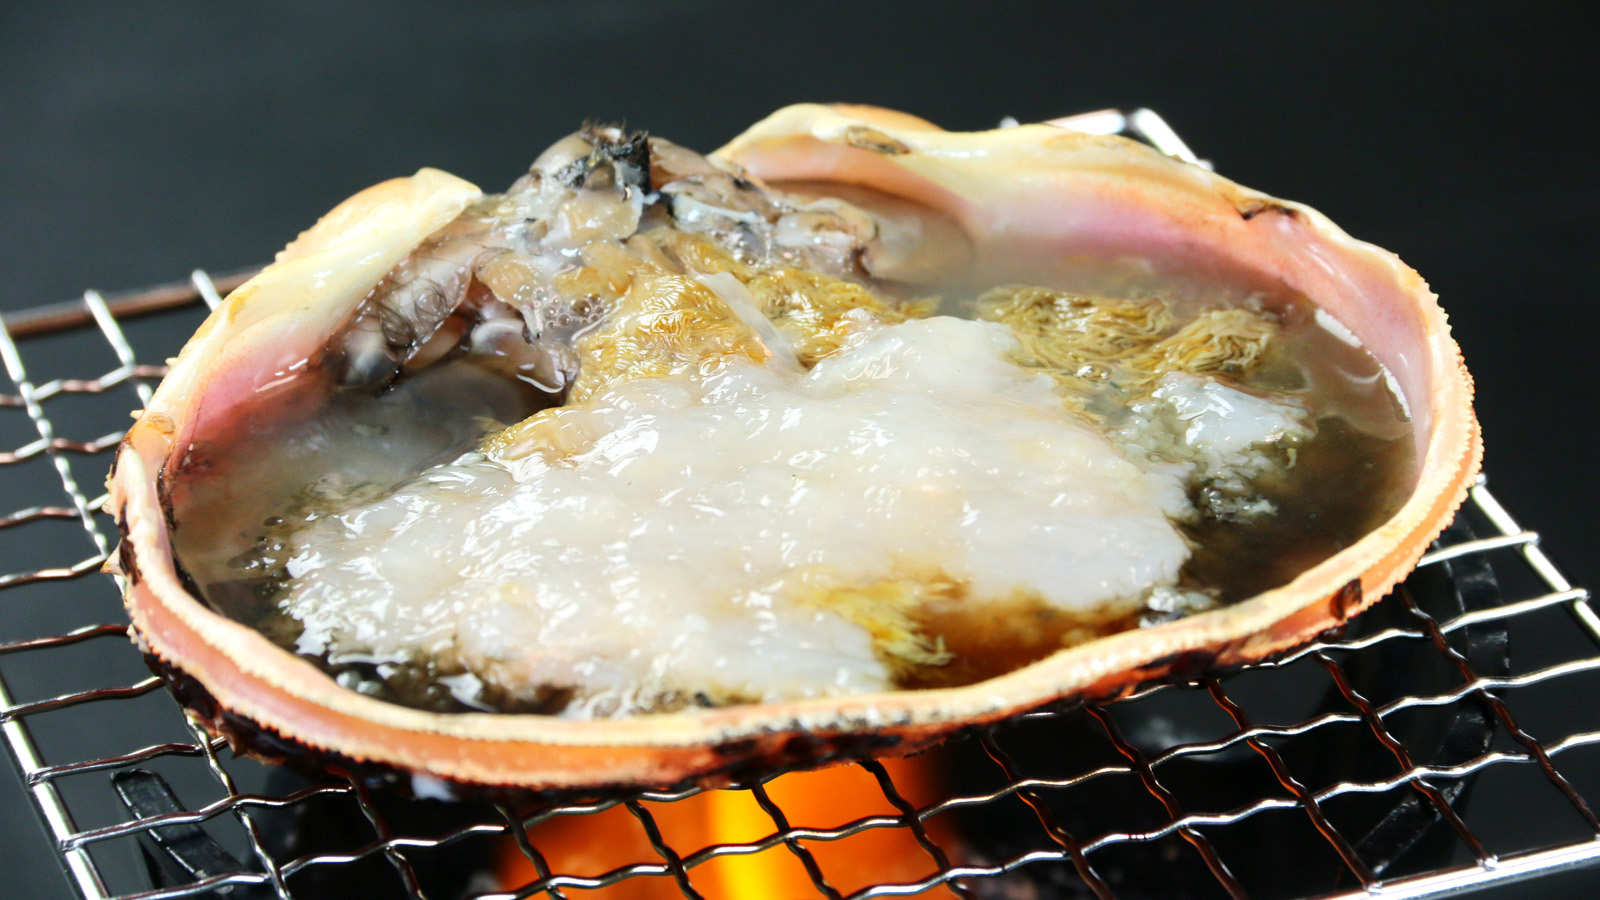 昔から変わらない、松喜特製カニの身を入れた甲羅焼き。これが美味しいんです。